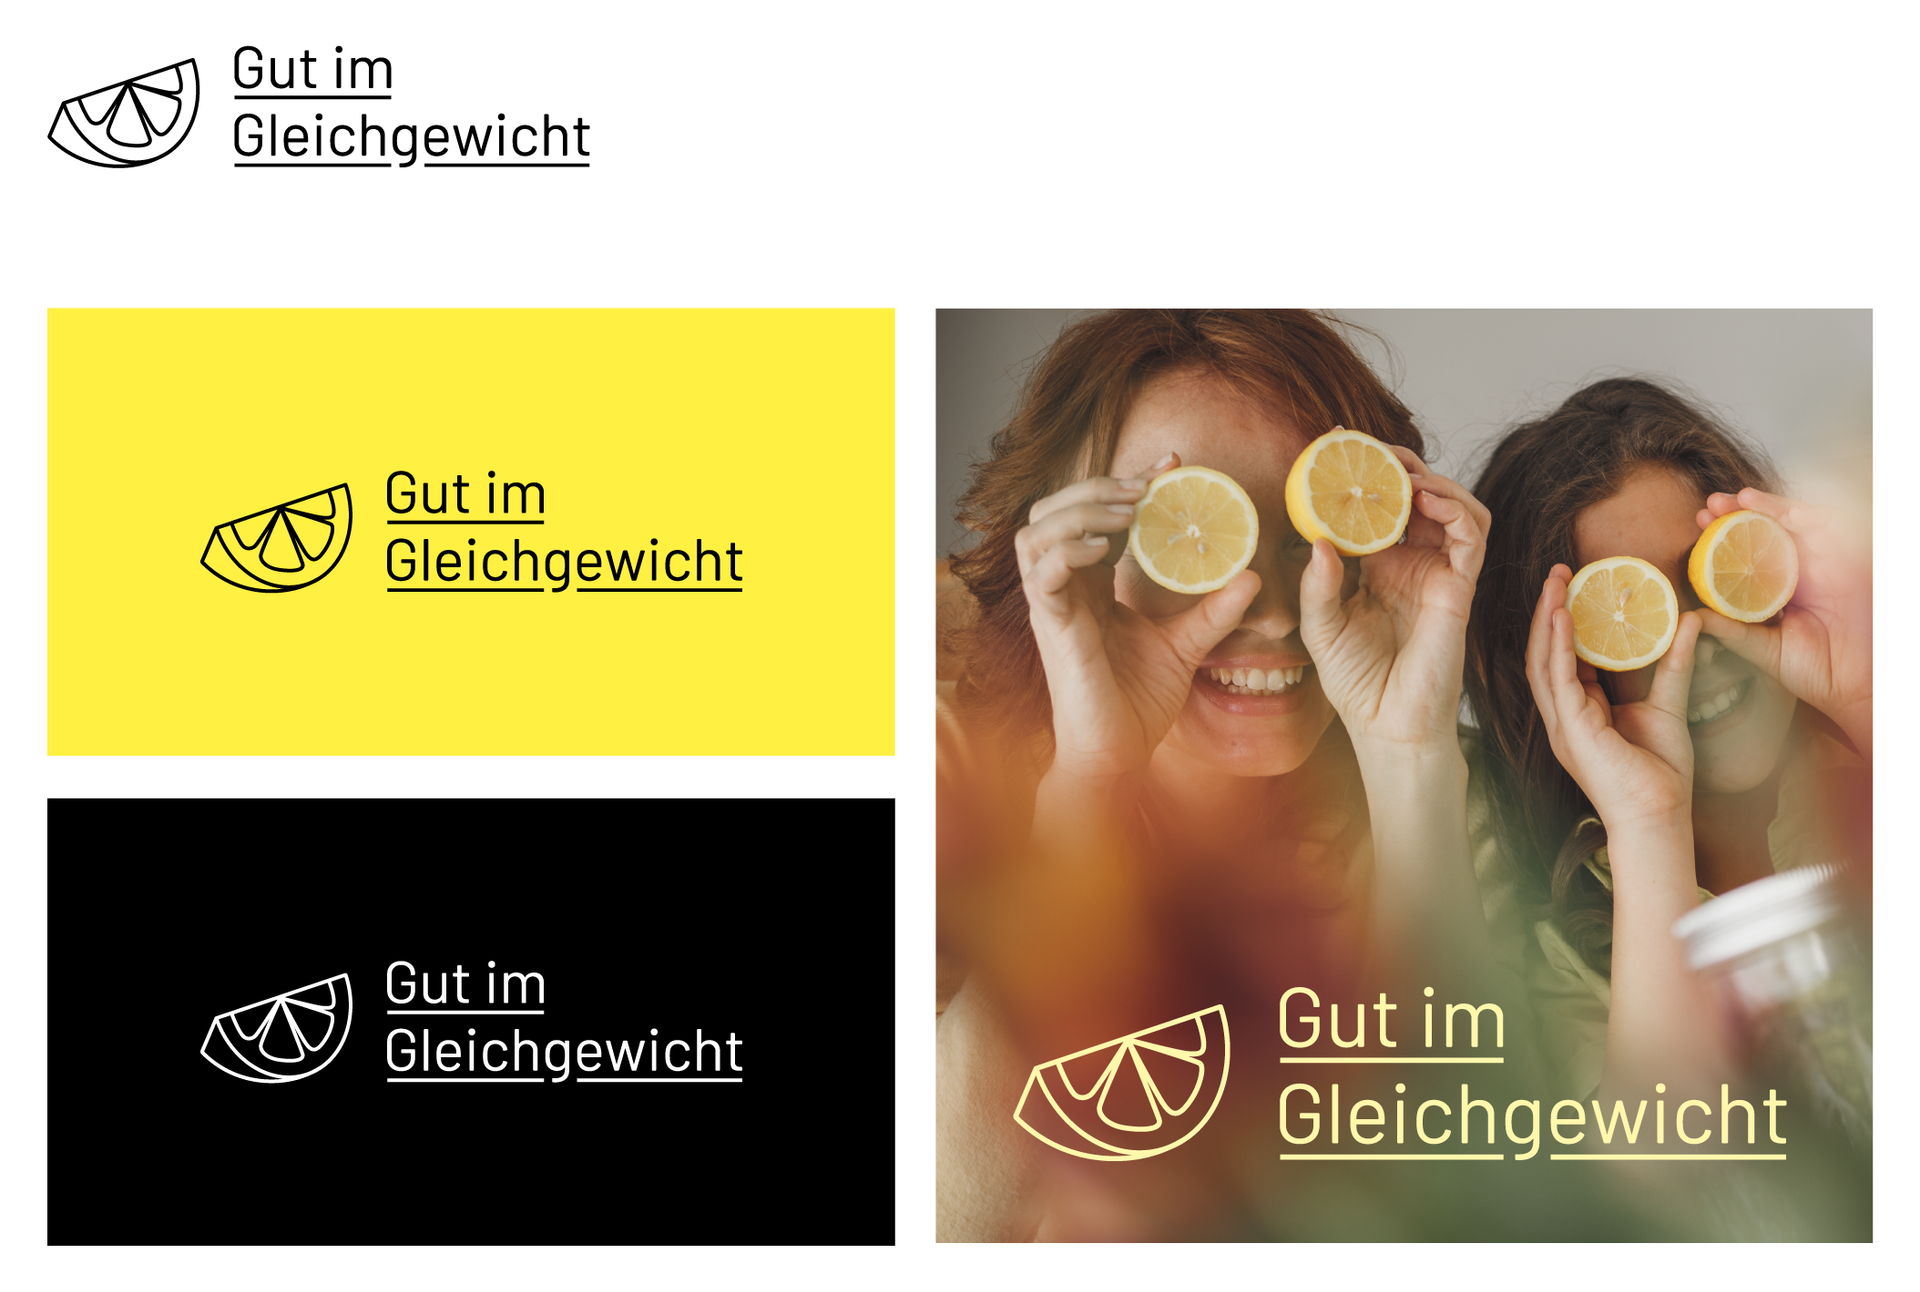 Schwarz- und Weiß-Umsetzung sowie Negativ-Umsetzung des Logos auf gelben oder schwarzen Hintergrund sowie auf Foto-Hintergrund.